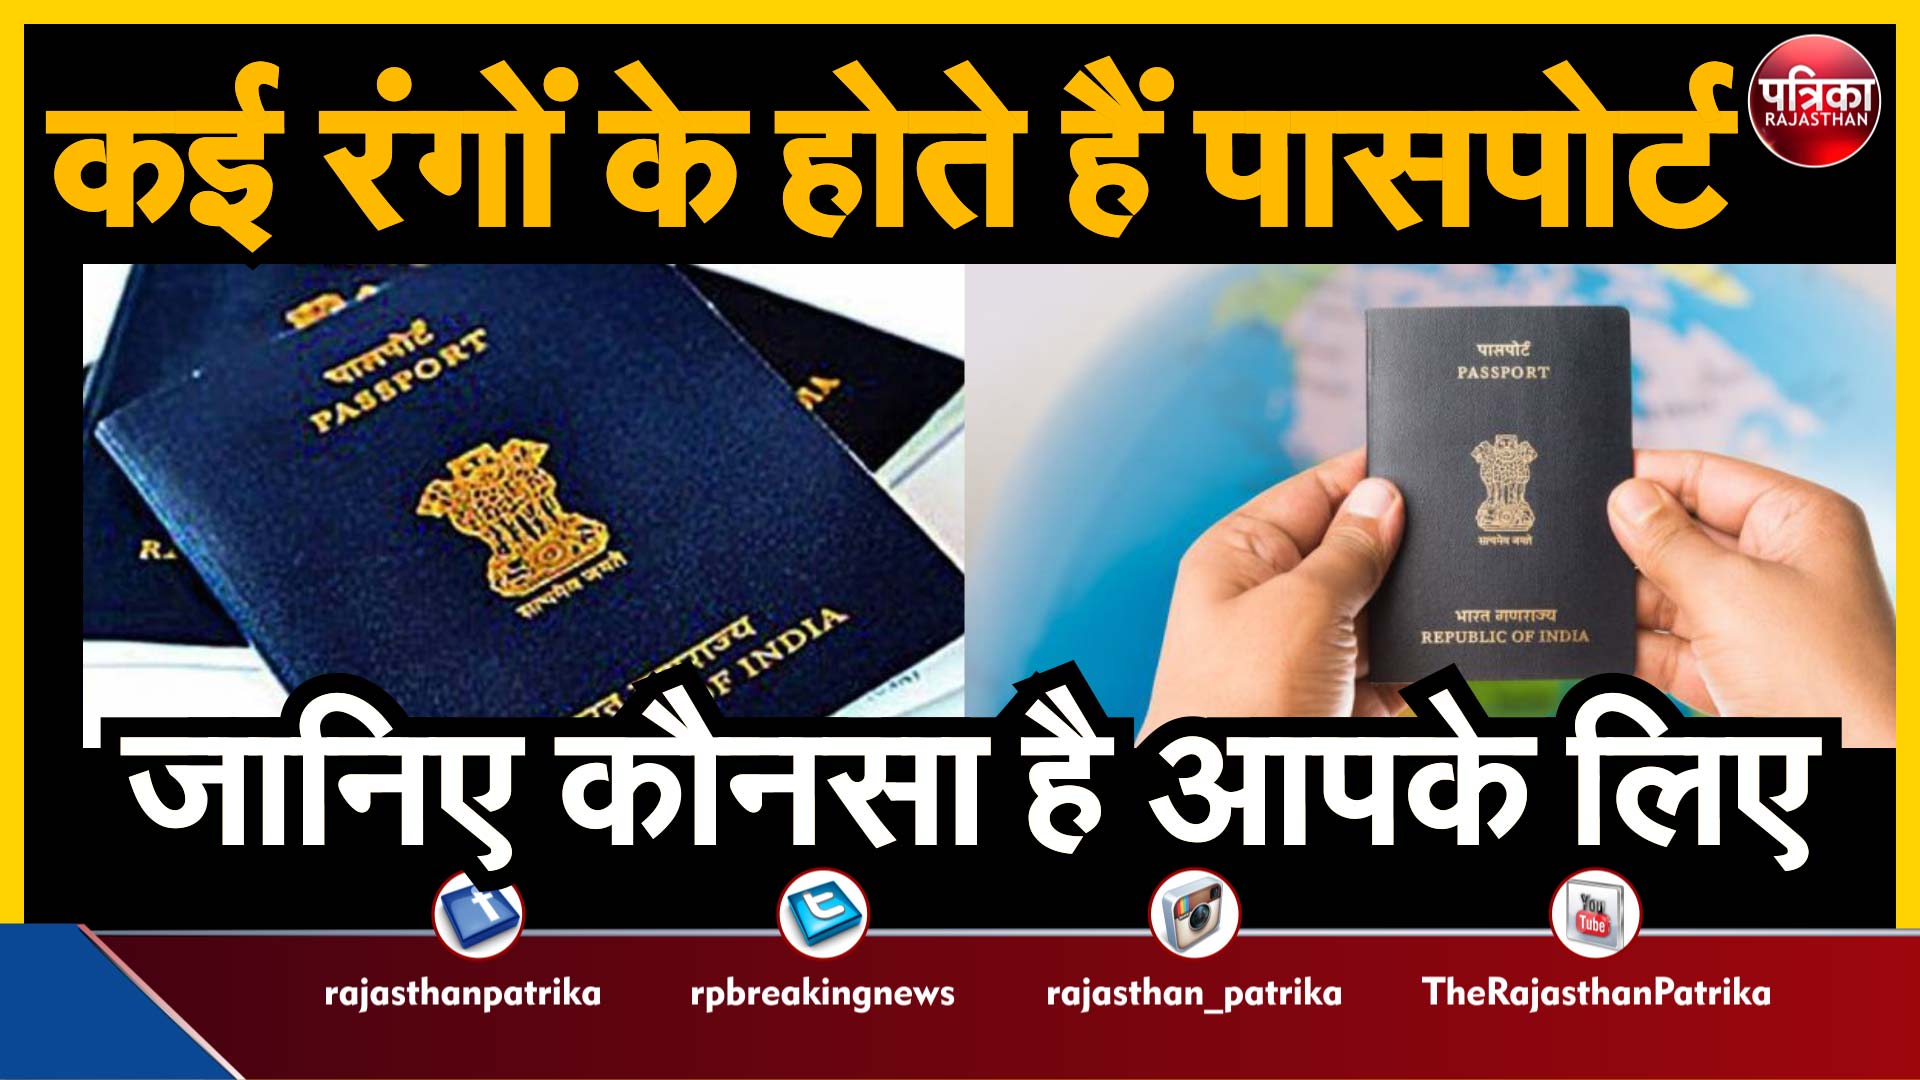 Indian passports : कई रंगों के होते हैं पासपोर्ट, जानिए कौनसा है आपके लिए